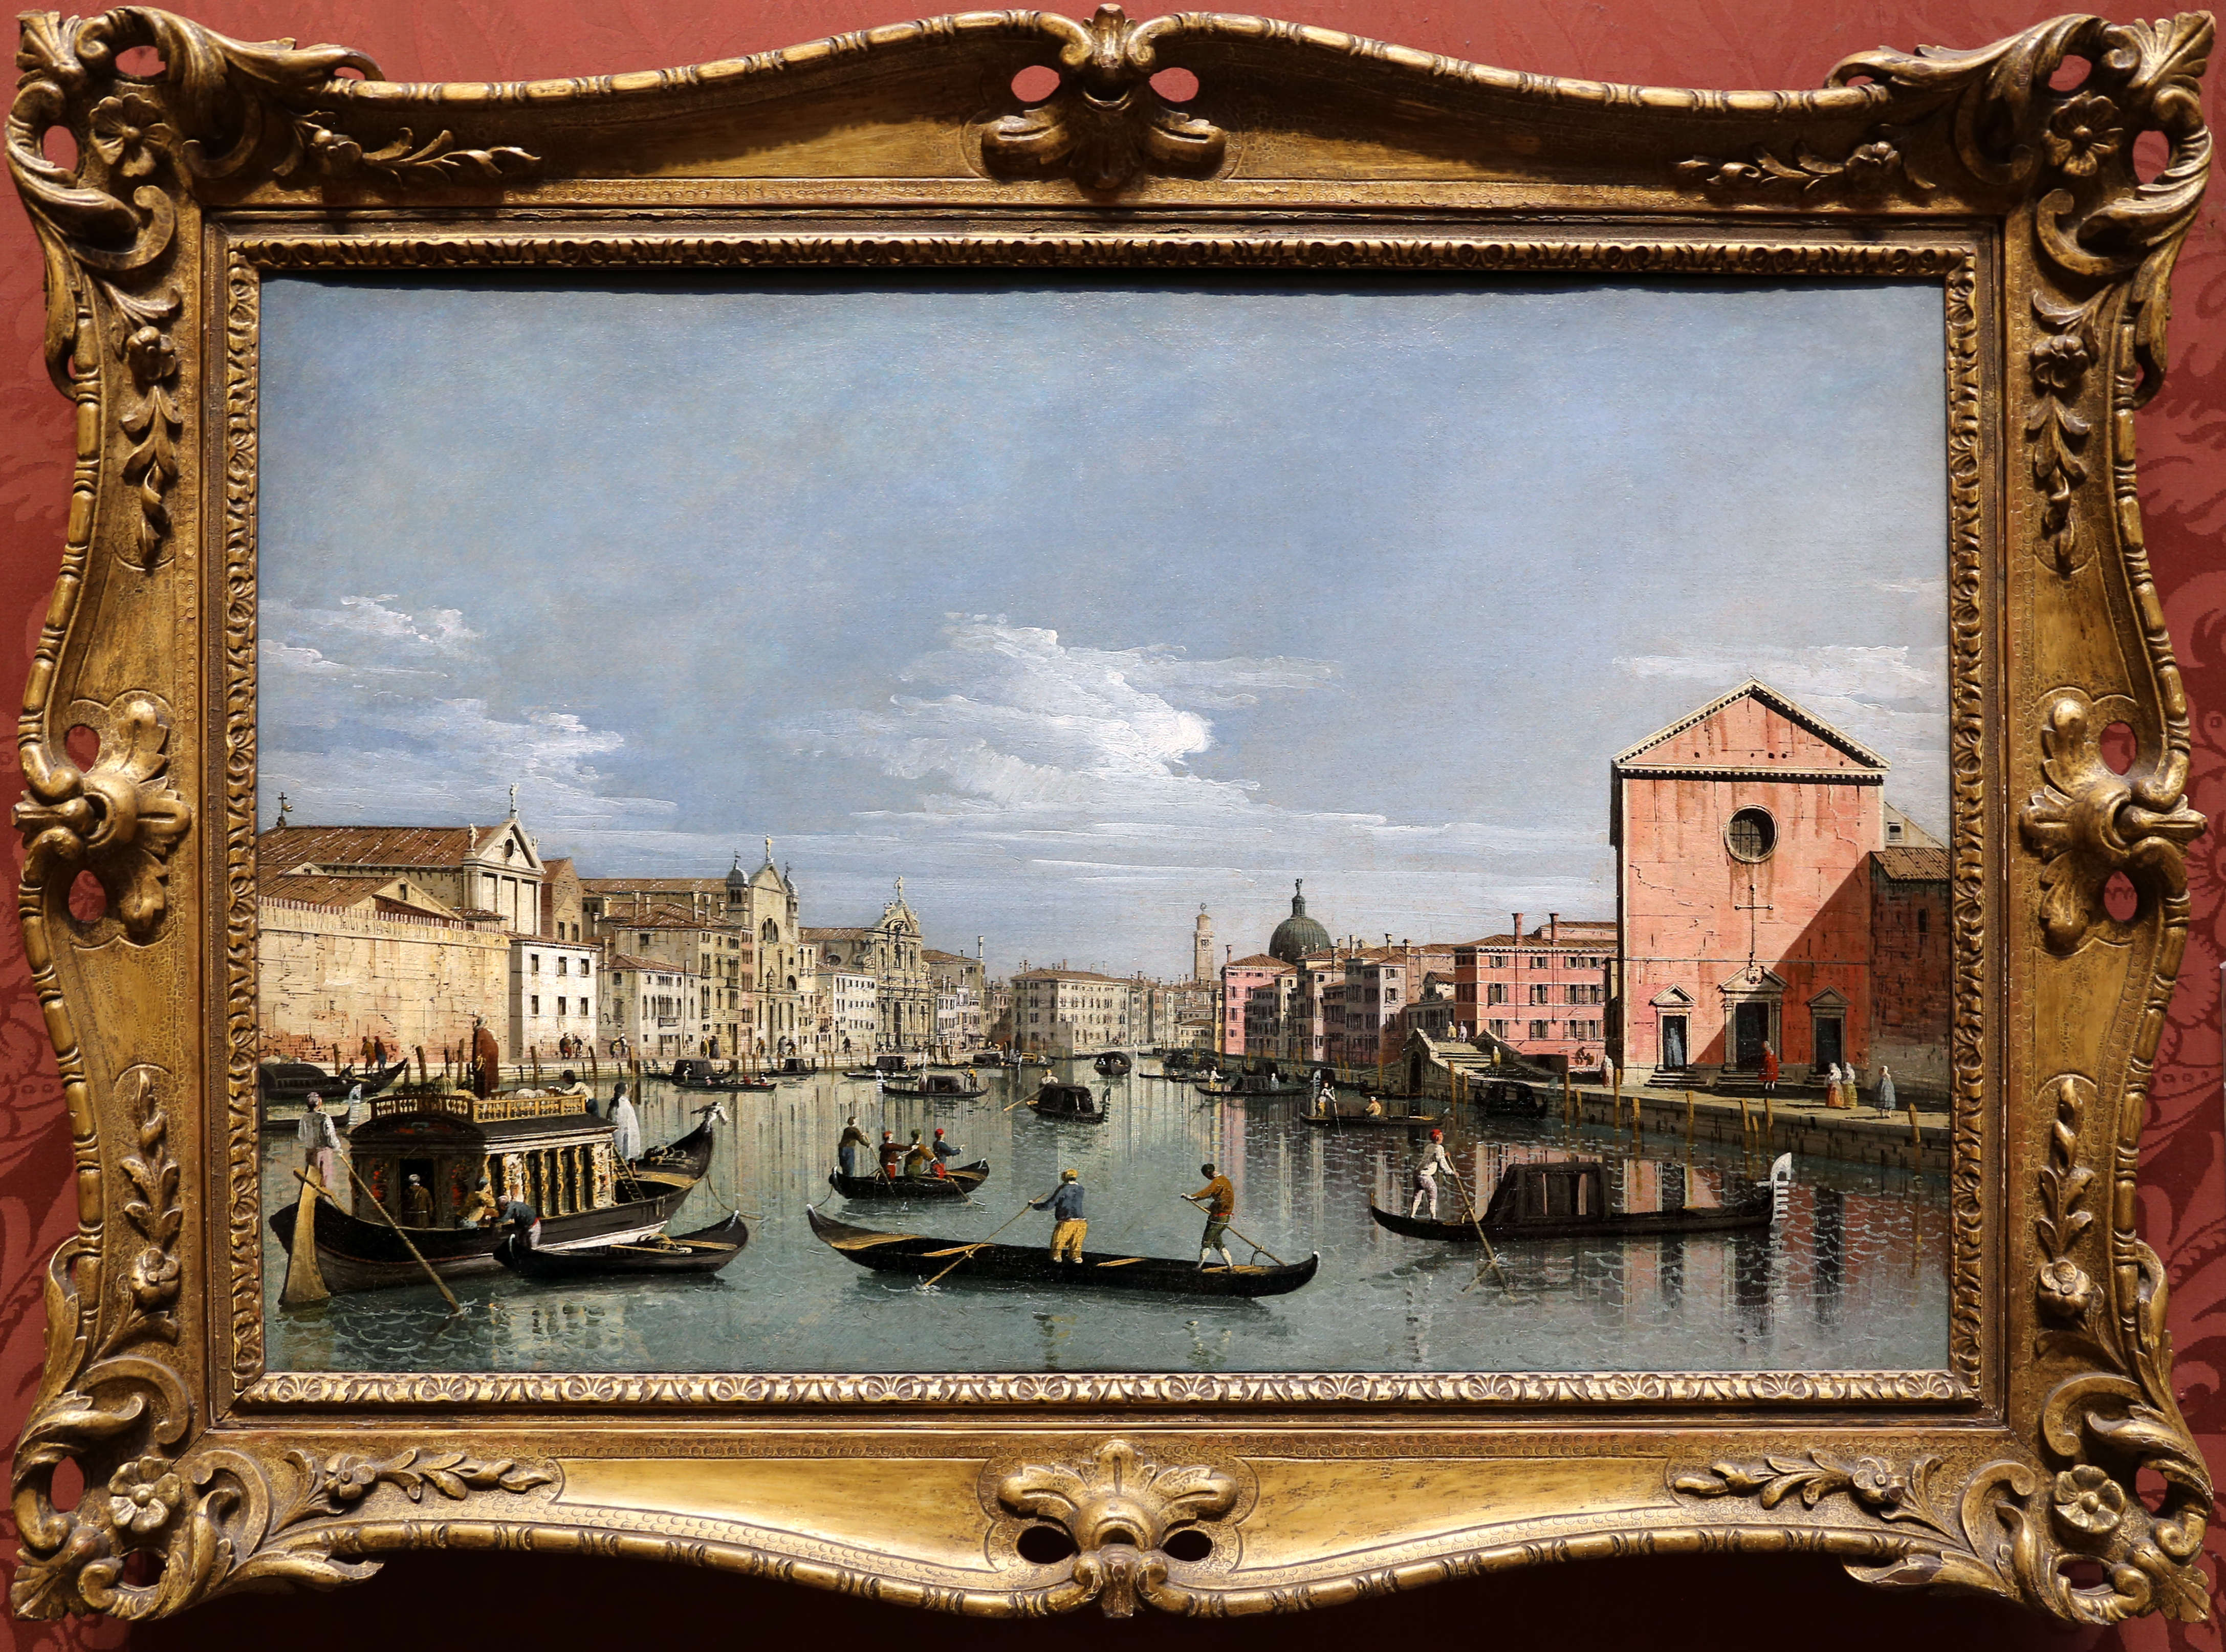 Bernardo bellotto, venezia, imbocco del canal grande davanti santa croce, 1740-50 ca. 01